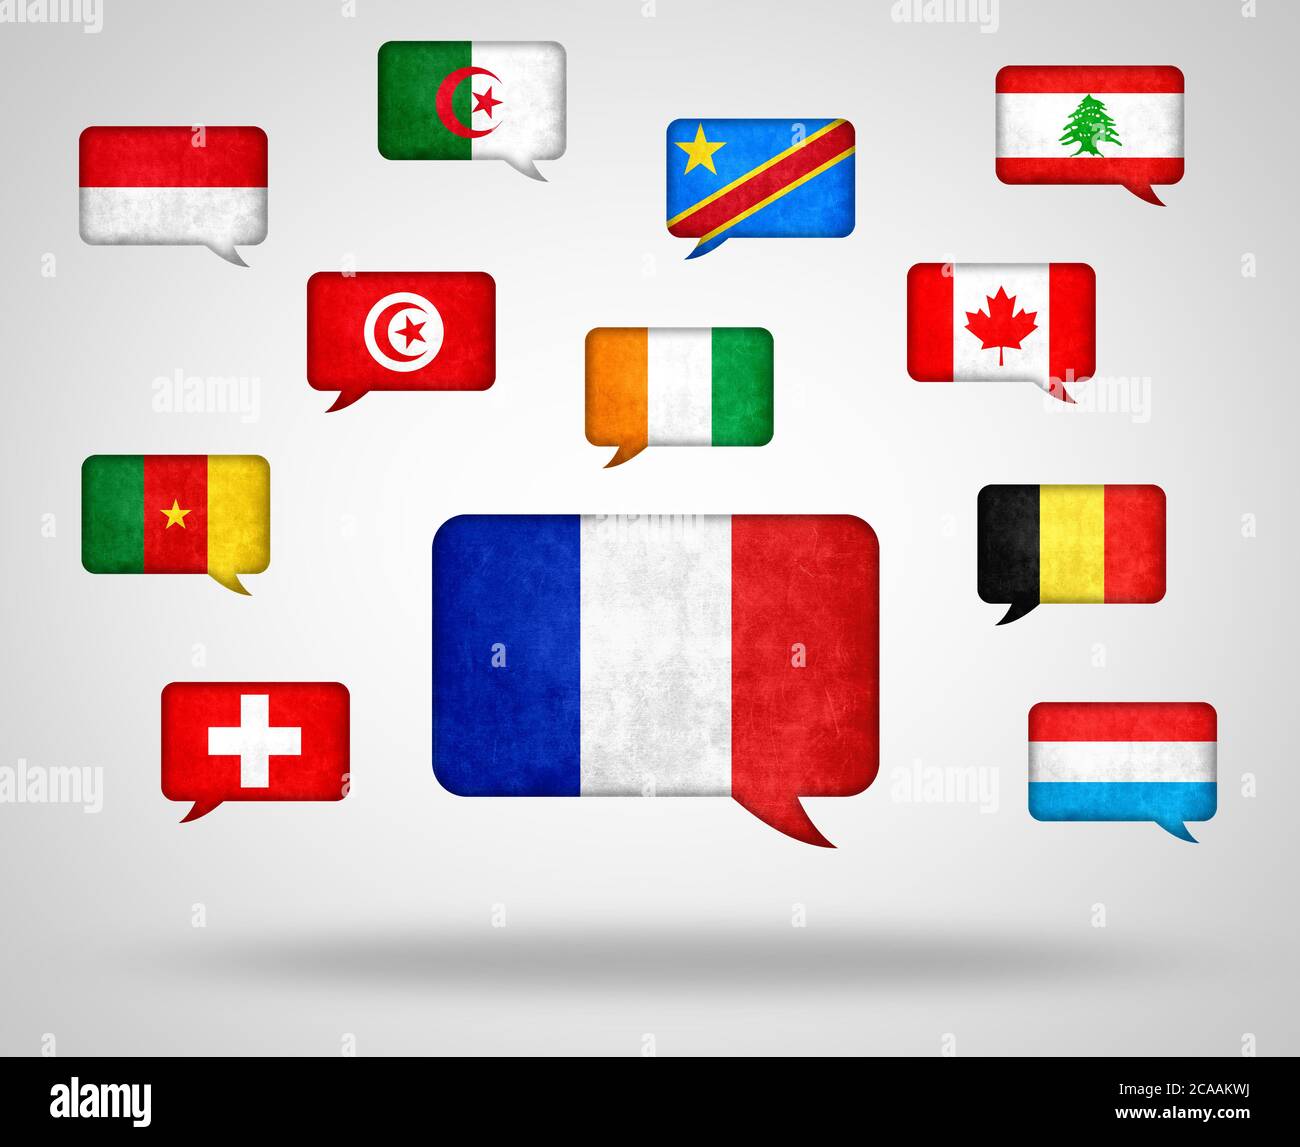 Französische Sprache in der Welt - verschiedene Länder mit Französisch als  Sprache Stockfotografie - Alamy